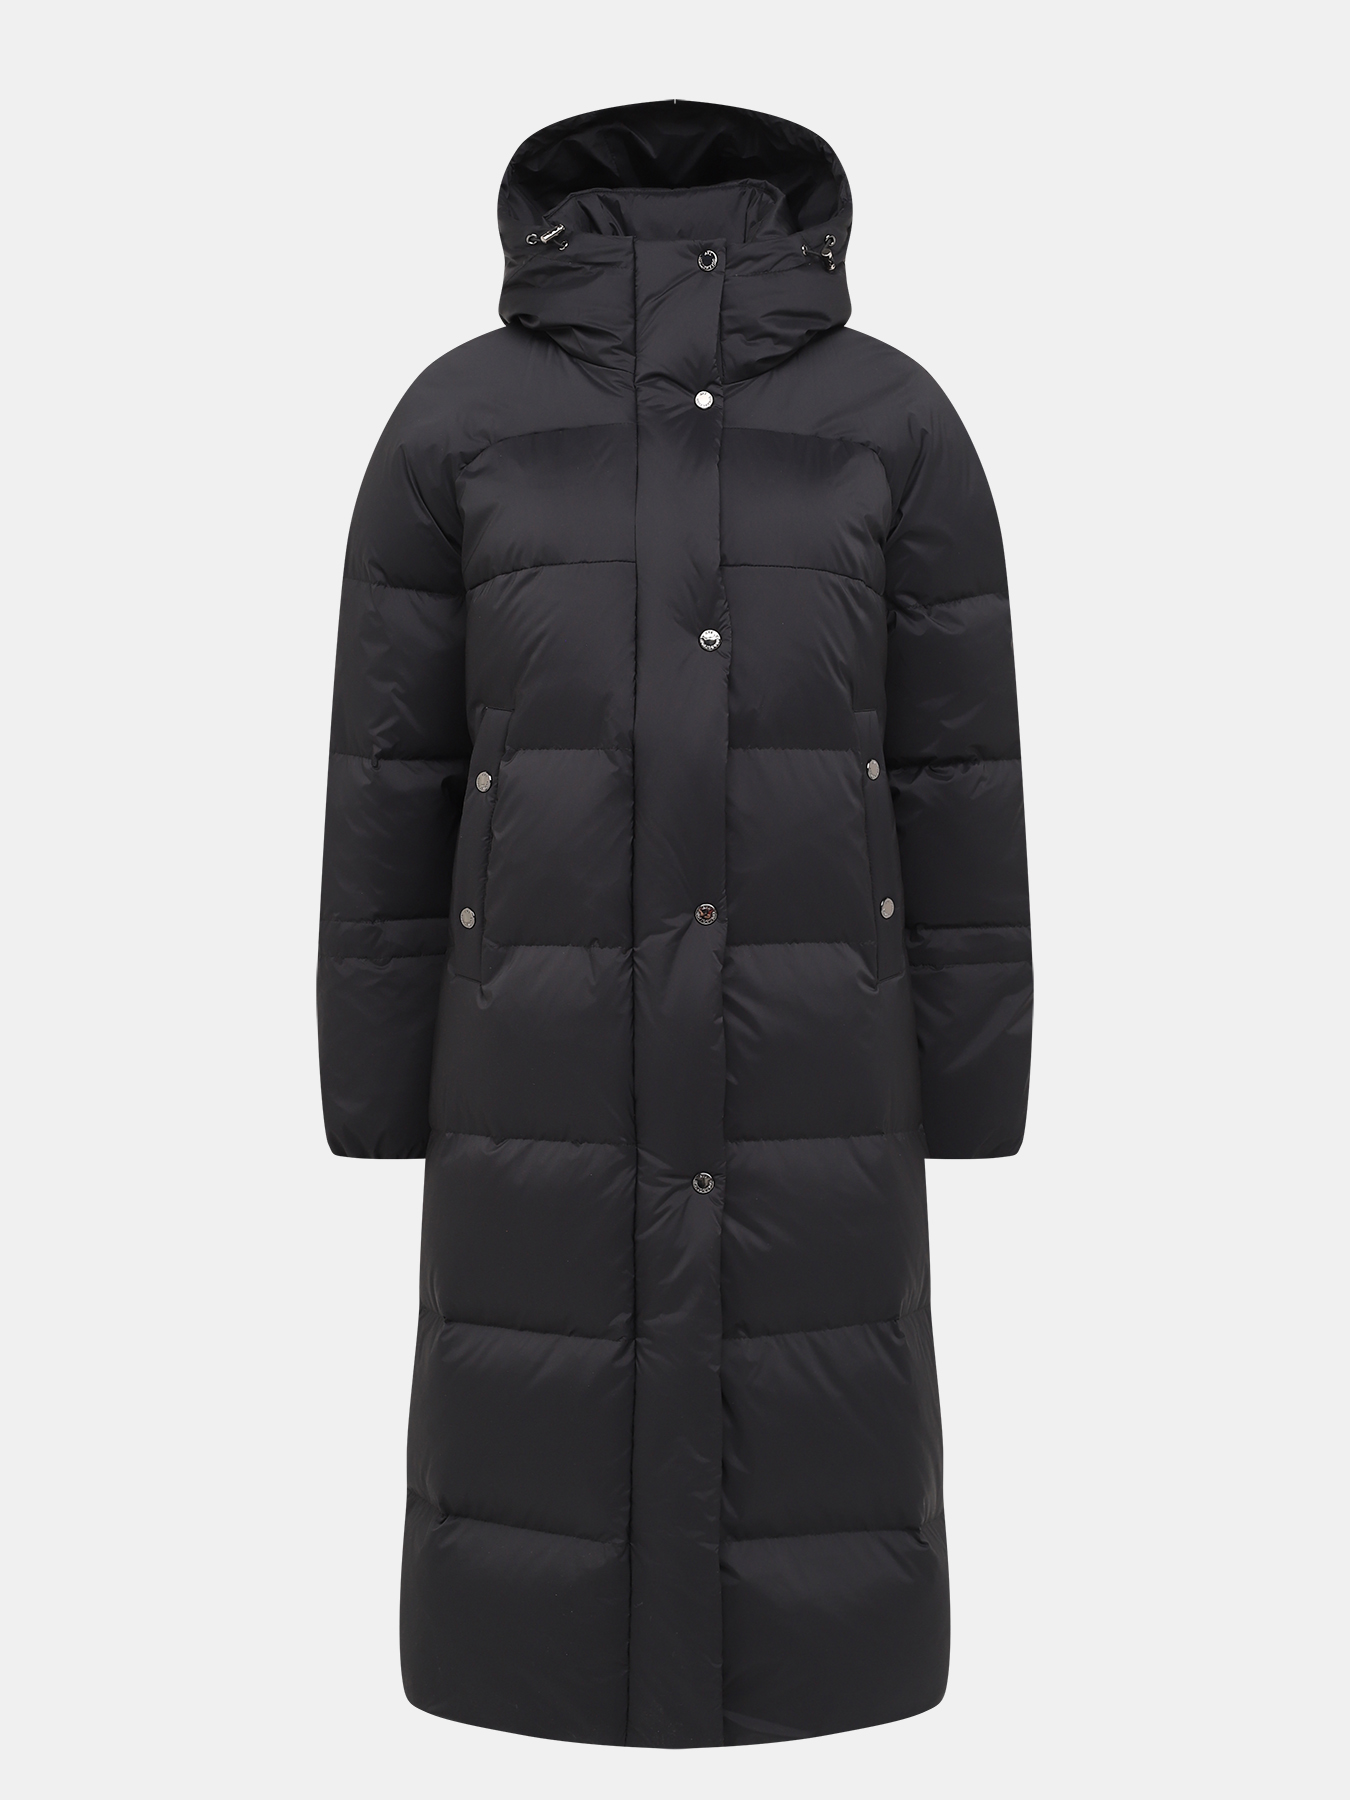 Пальто зимнее AVI 433511-026, цвет темно-серый, размер 50